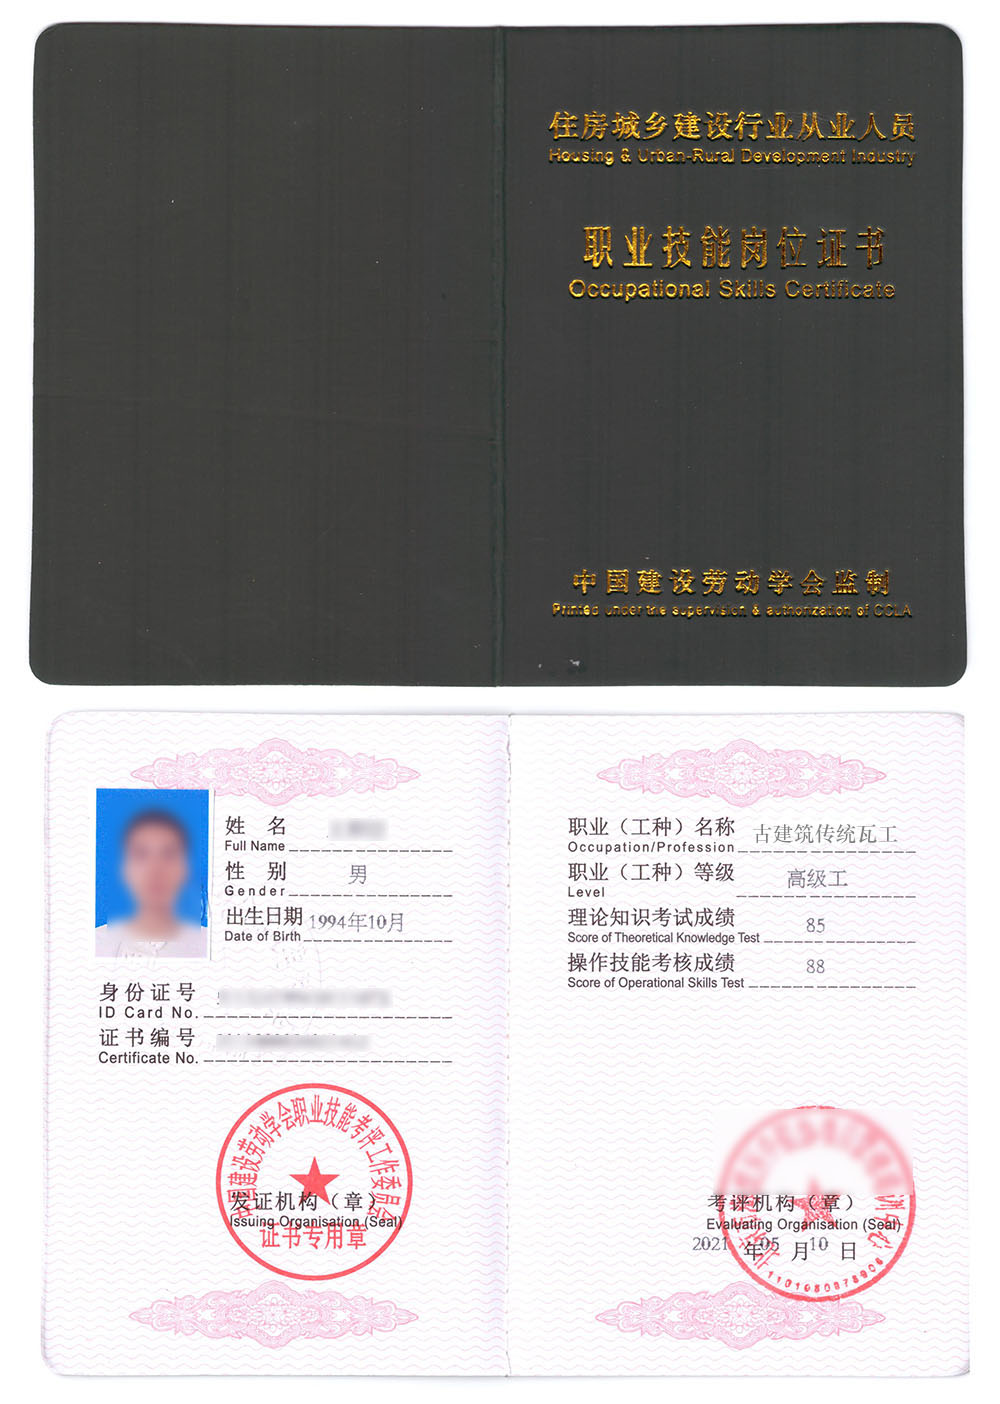 中国建设劳动学会 职业技能岗位证书 古建筑传统瓦工证书样本